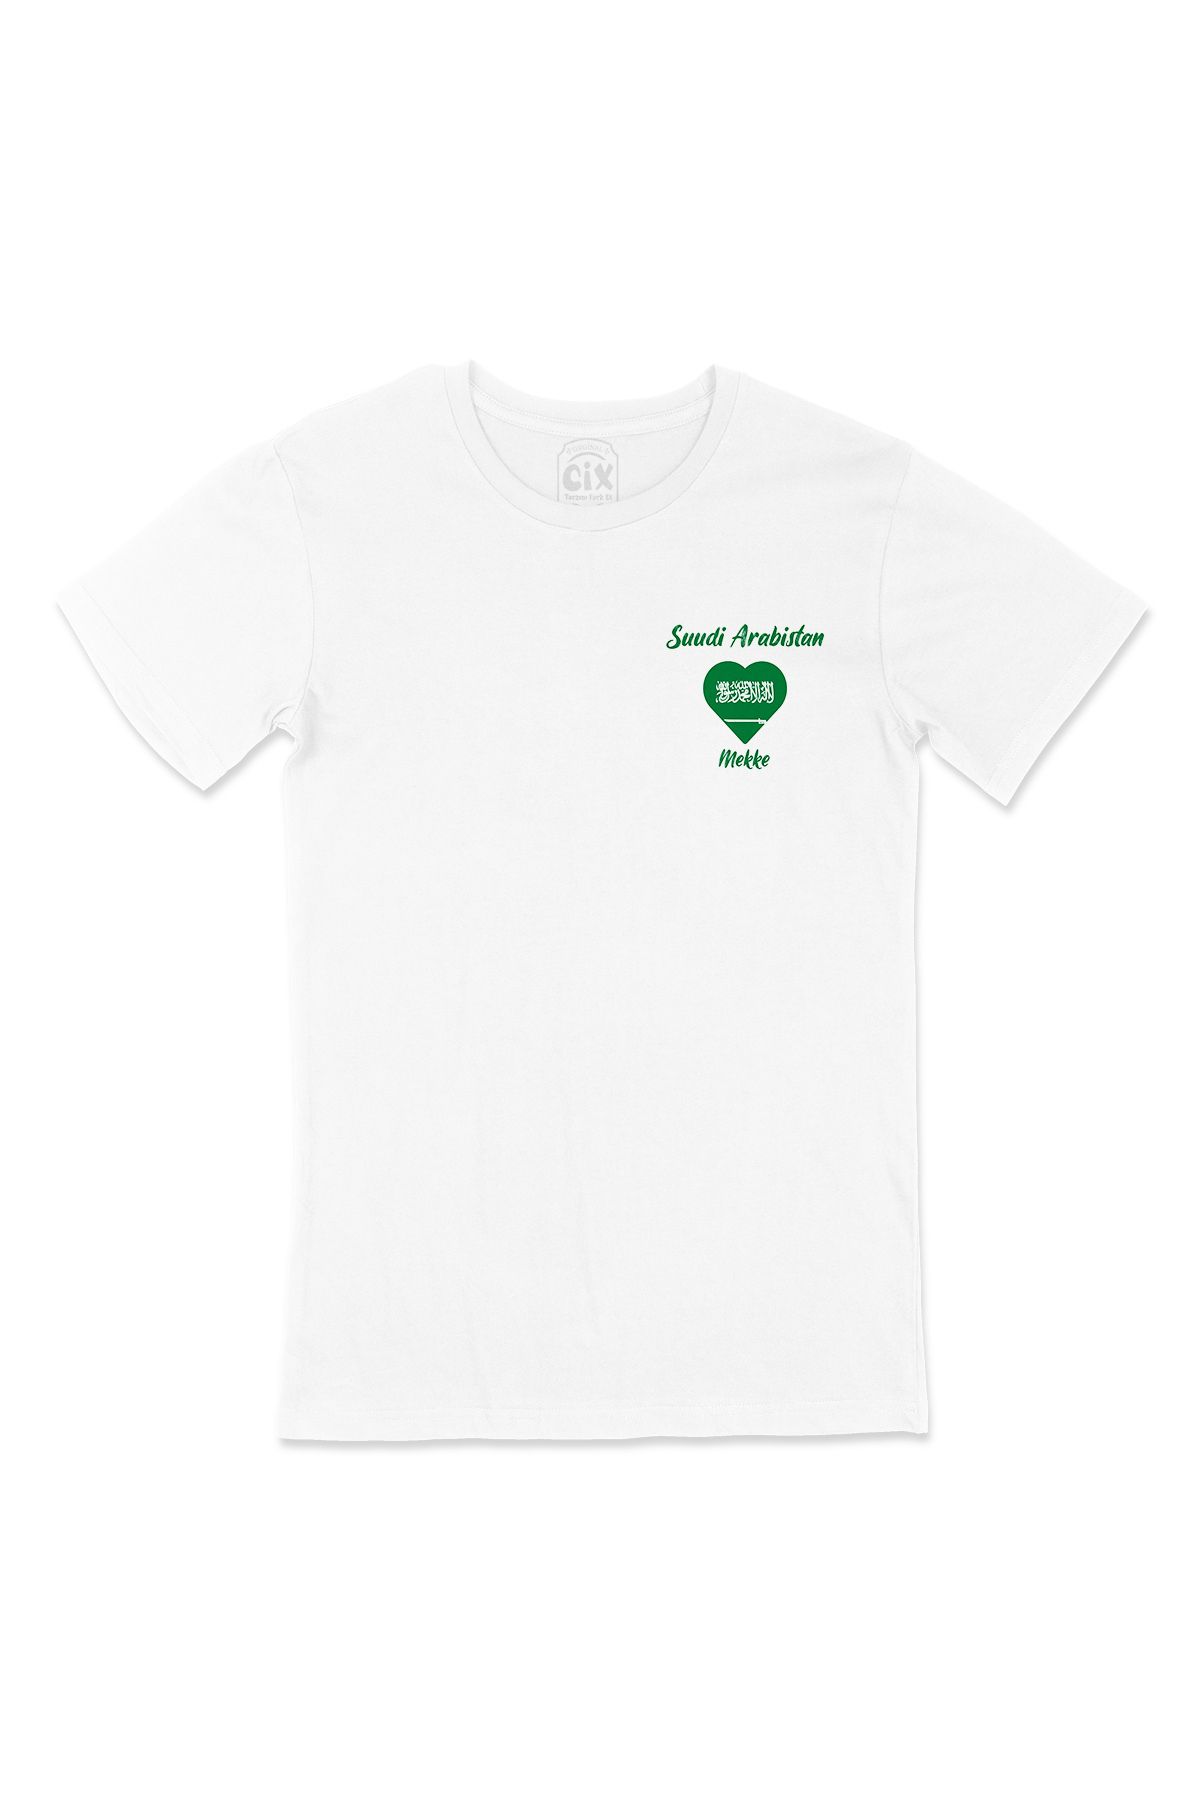 Cix Mekke Suudi Arabistan Bayraklı Kalpli Cep Logo Tasarımlı Beyaz Tişört